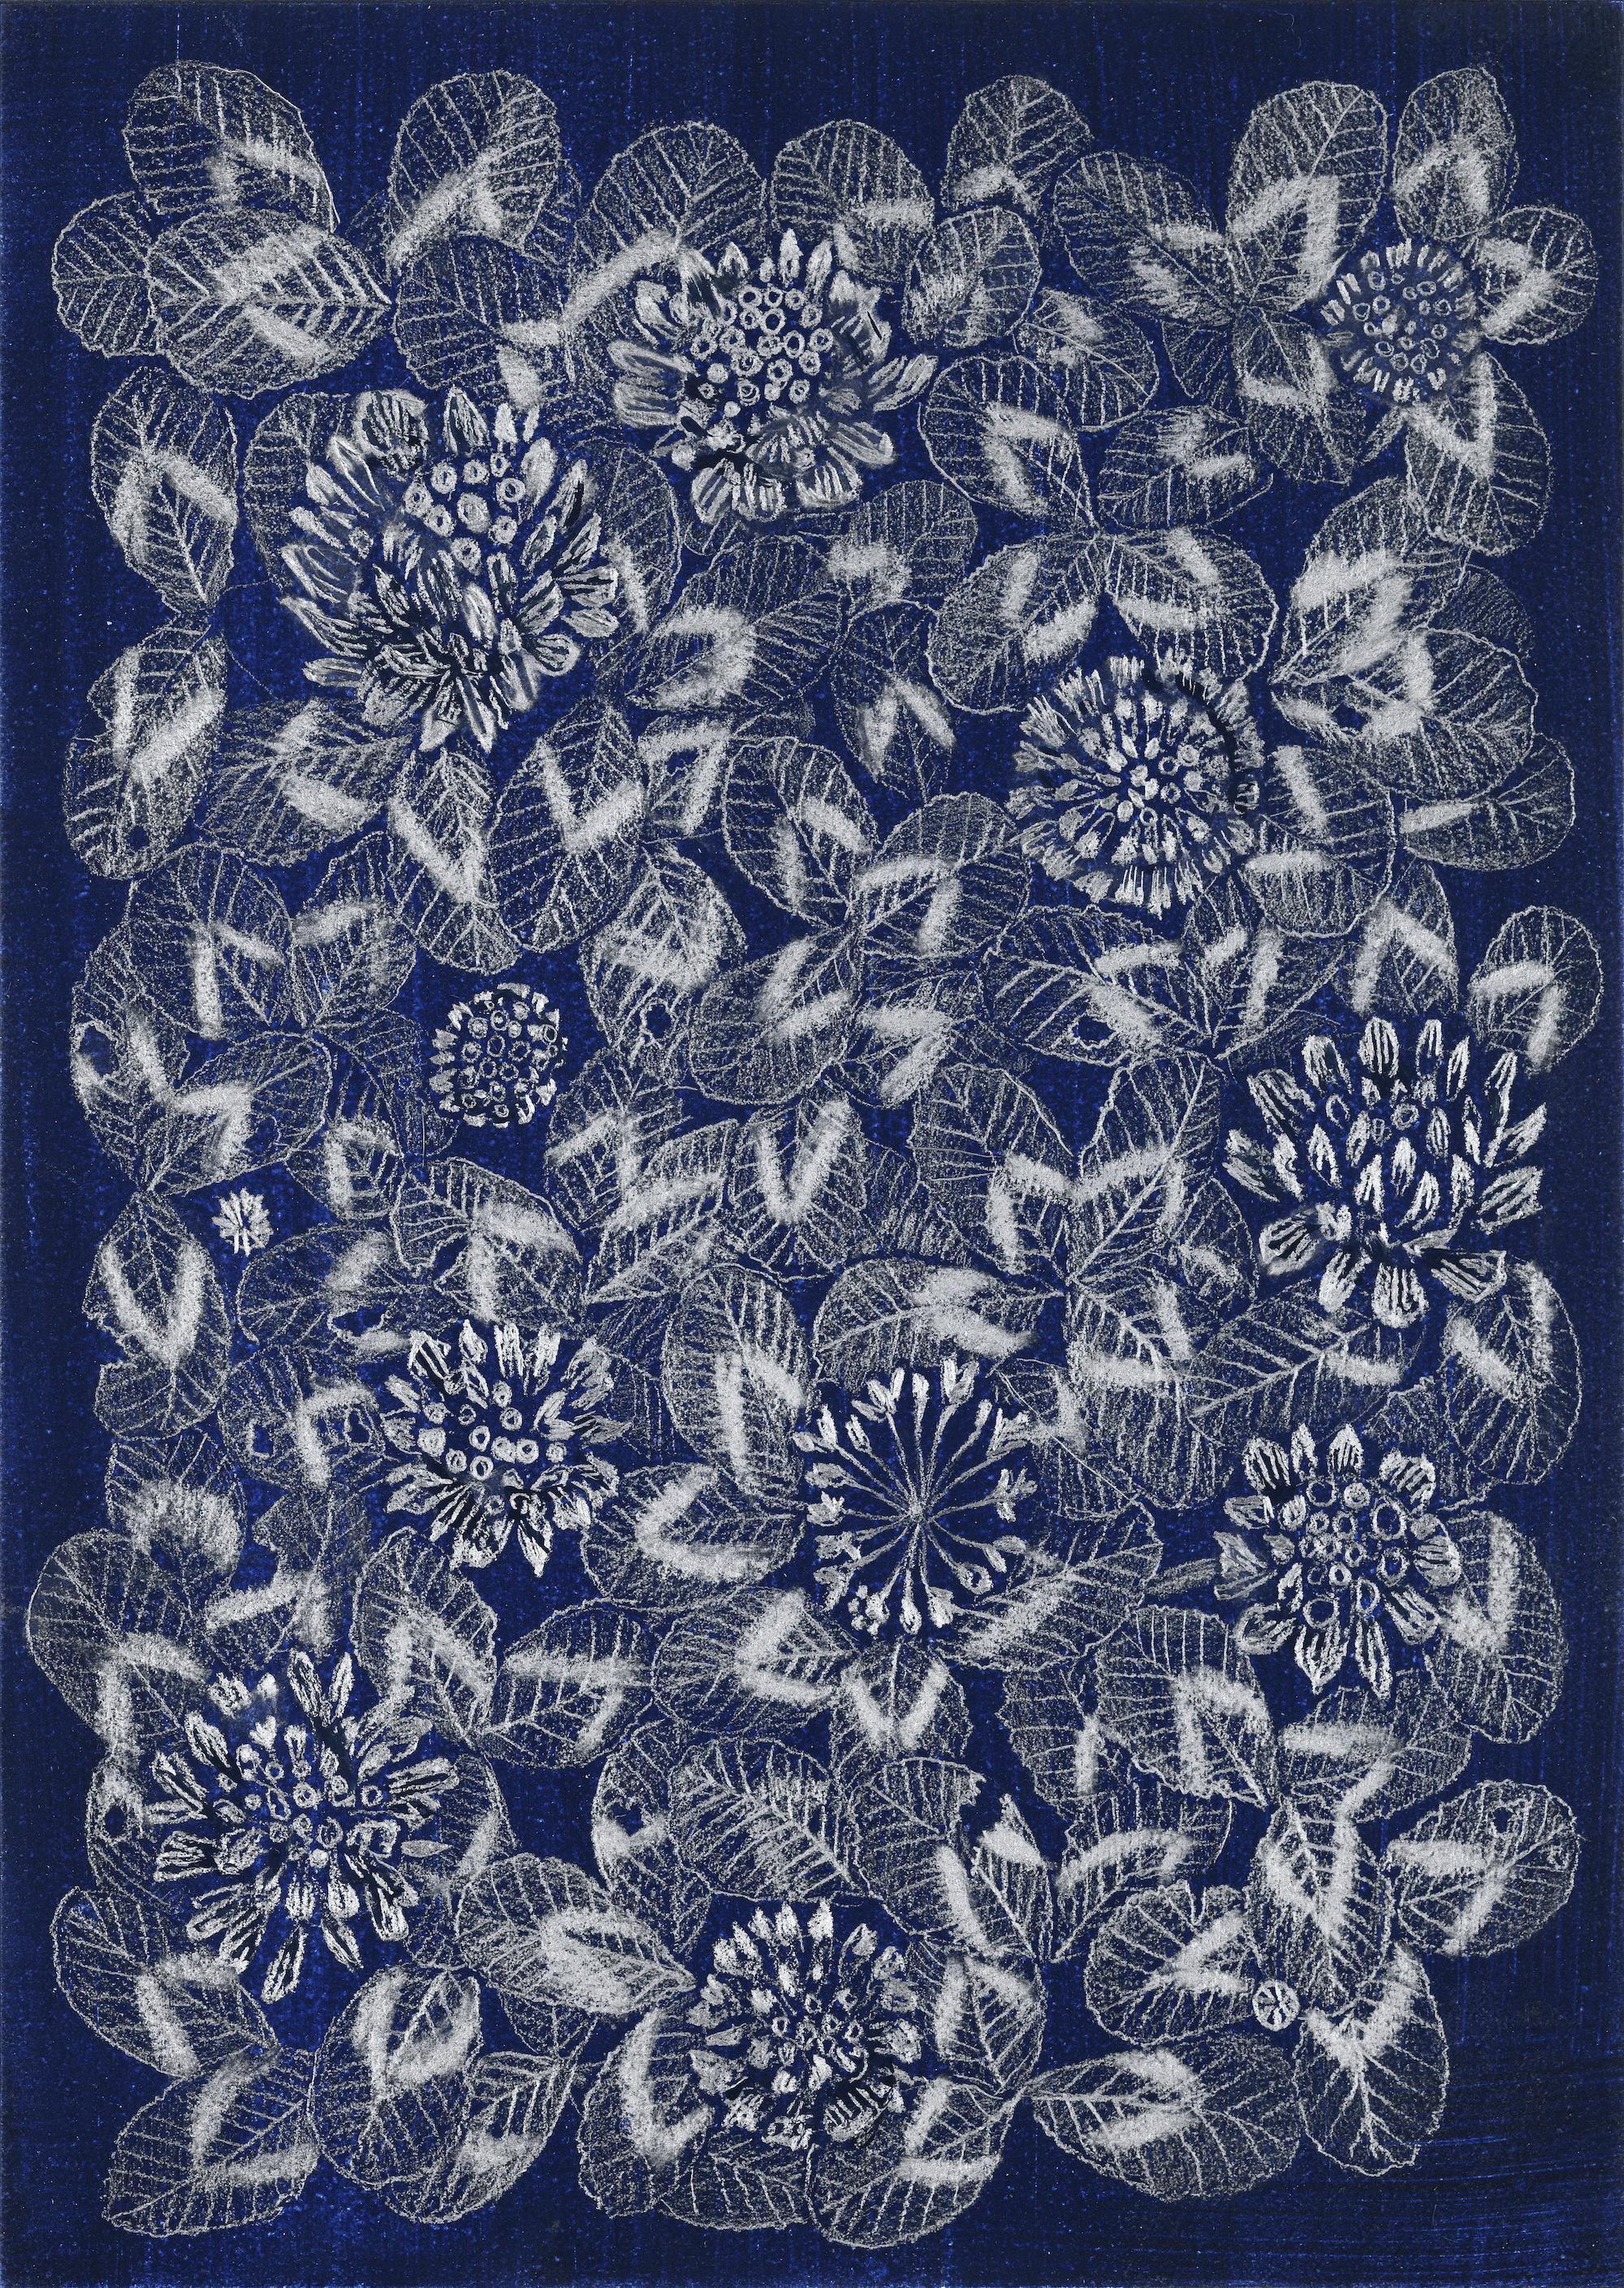 Margot Glass Still-Life - Blue Clover 1, patterned floral still life drawing